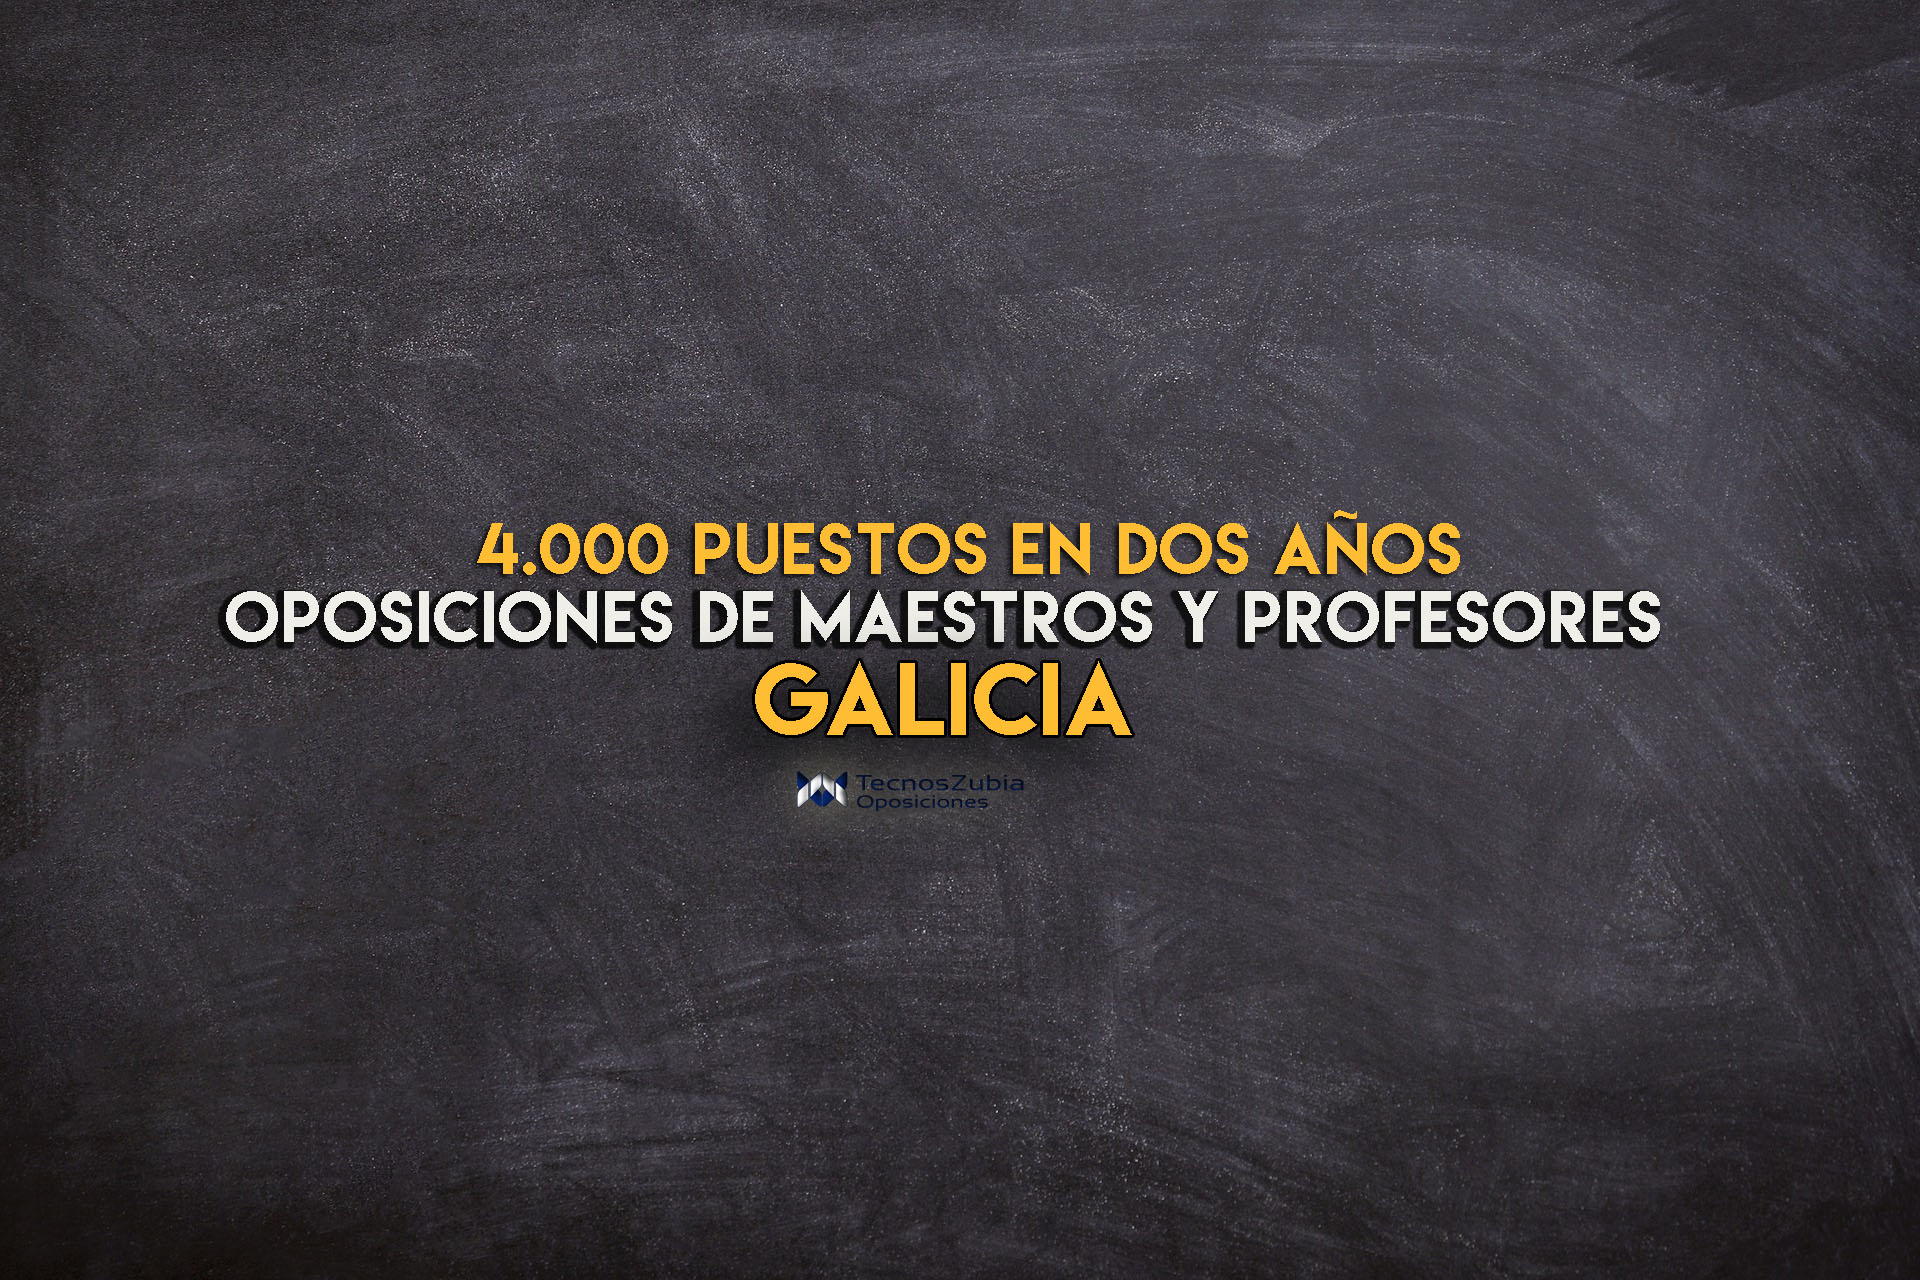 oposiciones maestros profesores galicia